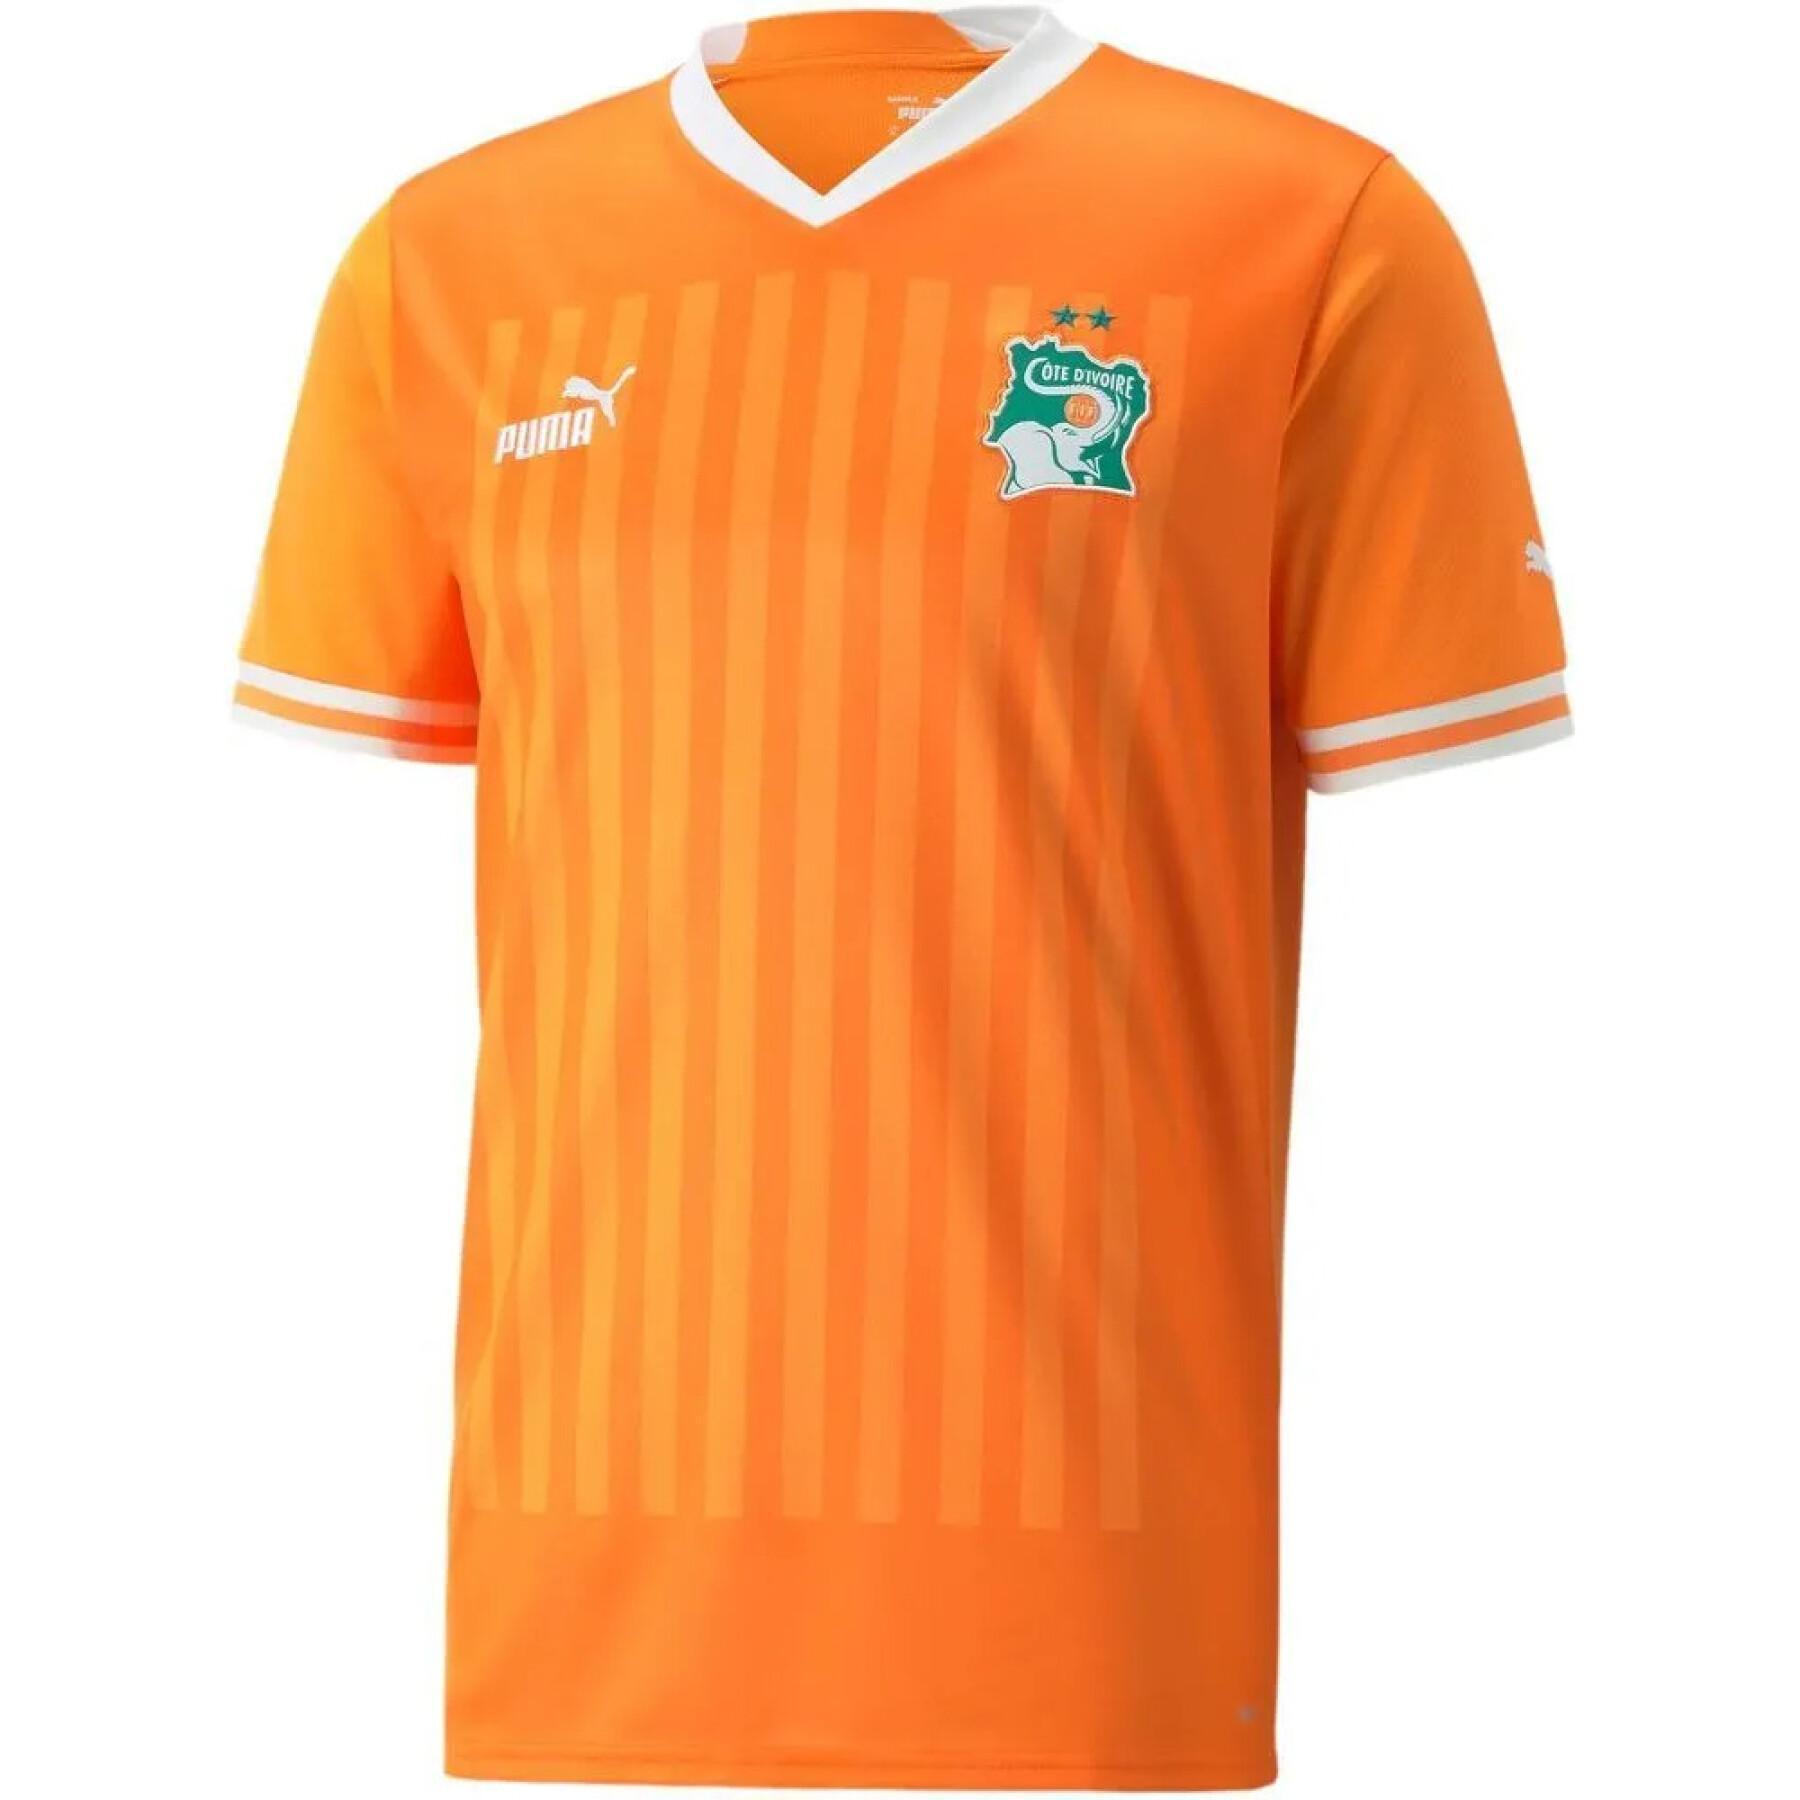 Home jersey Côte d'Ivoire 2022